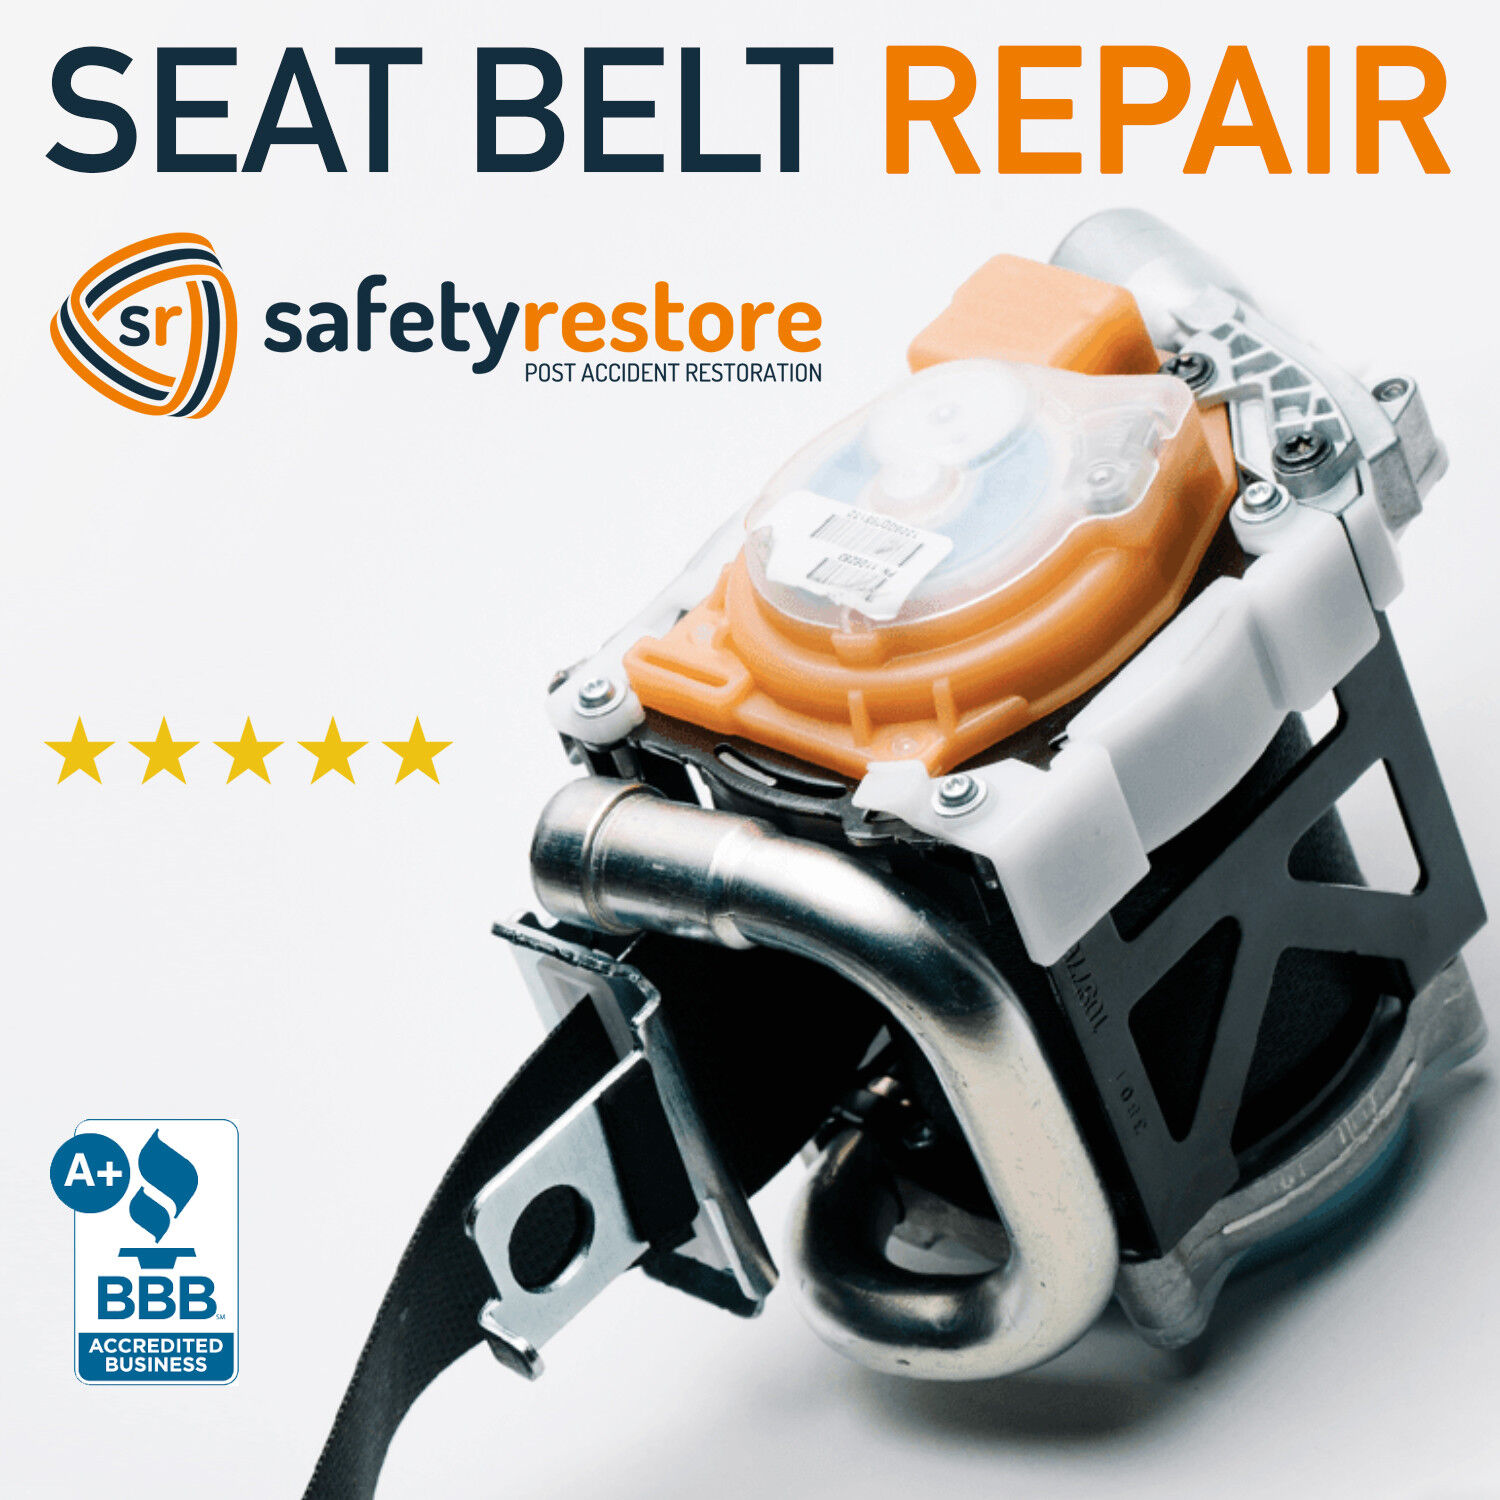 For Honda Seat Belt Repair single stage